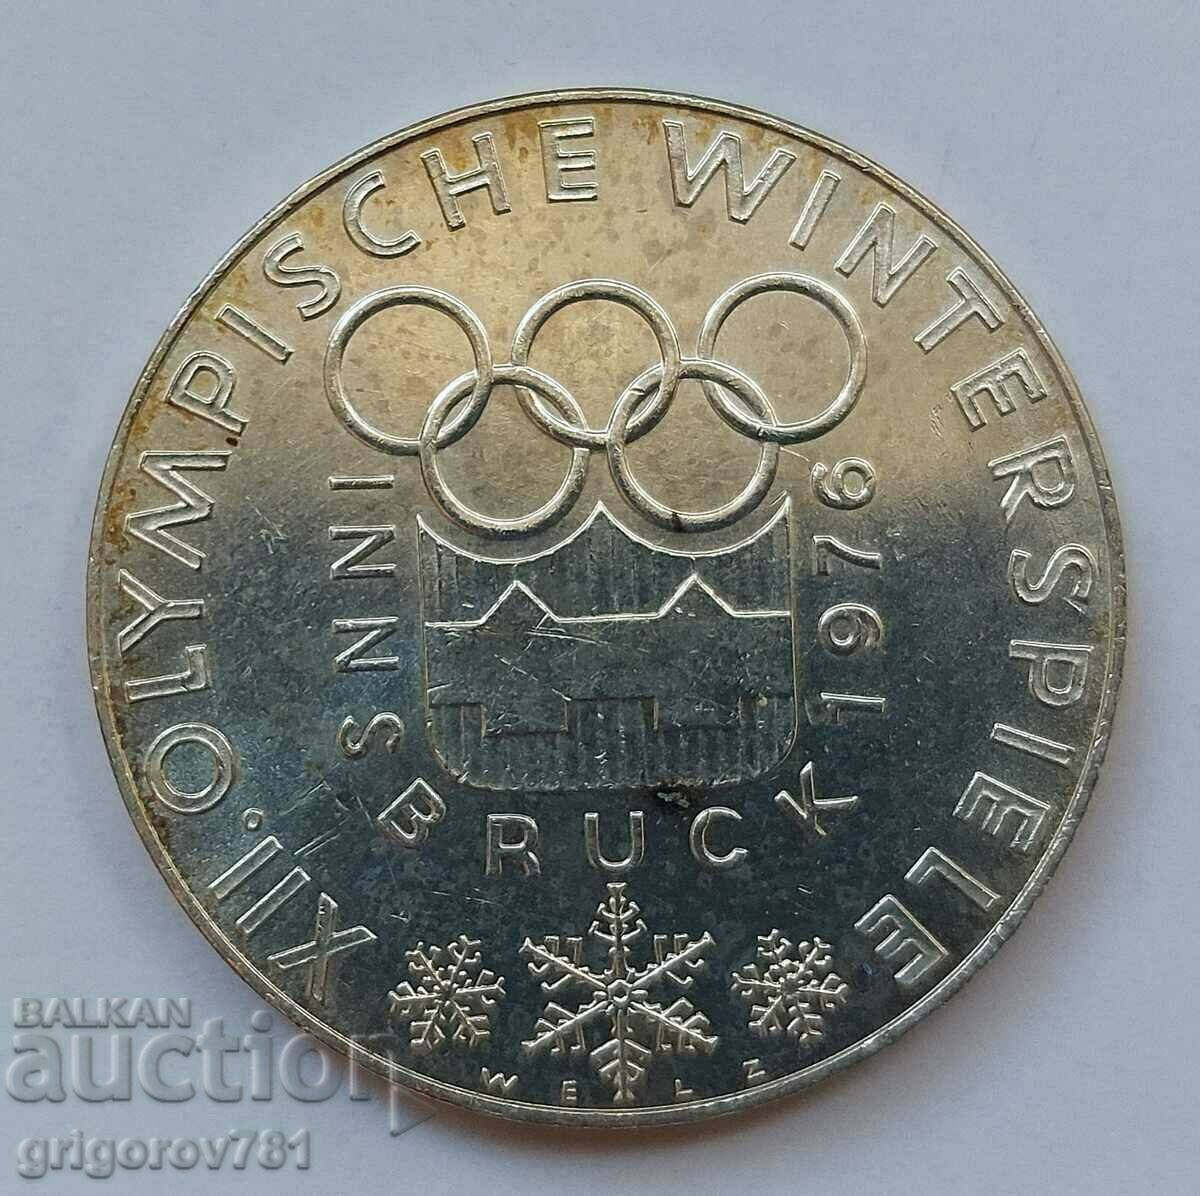 100 Shilling Silver Αυστρία 1976 - Ασημένιο νόμισμα #24